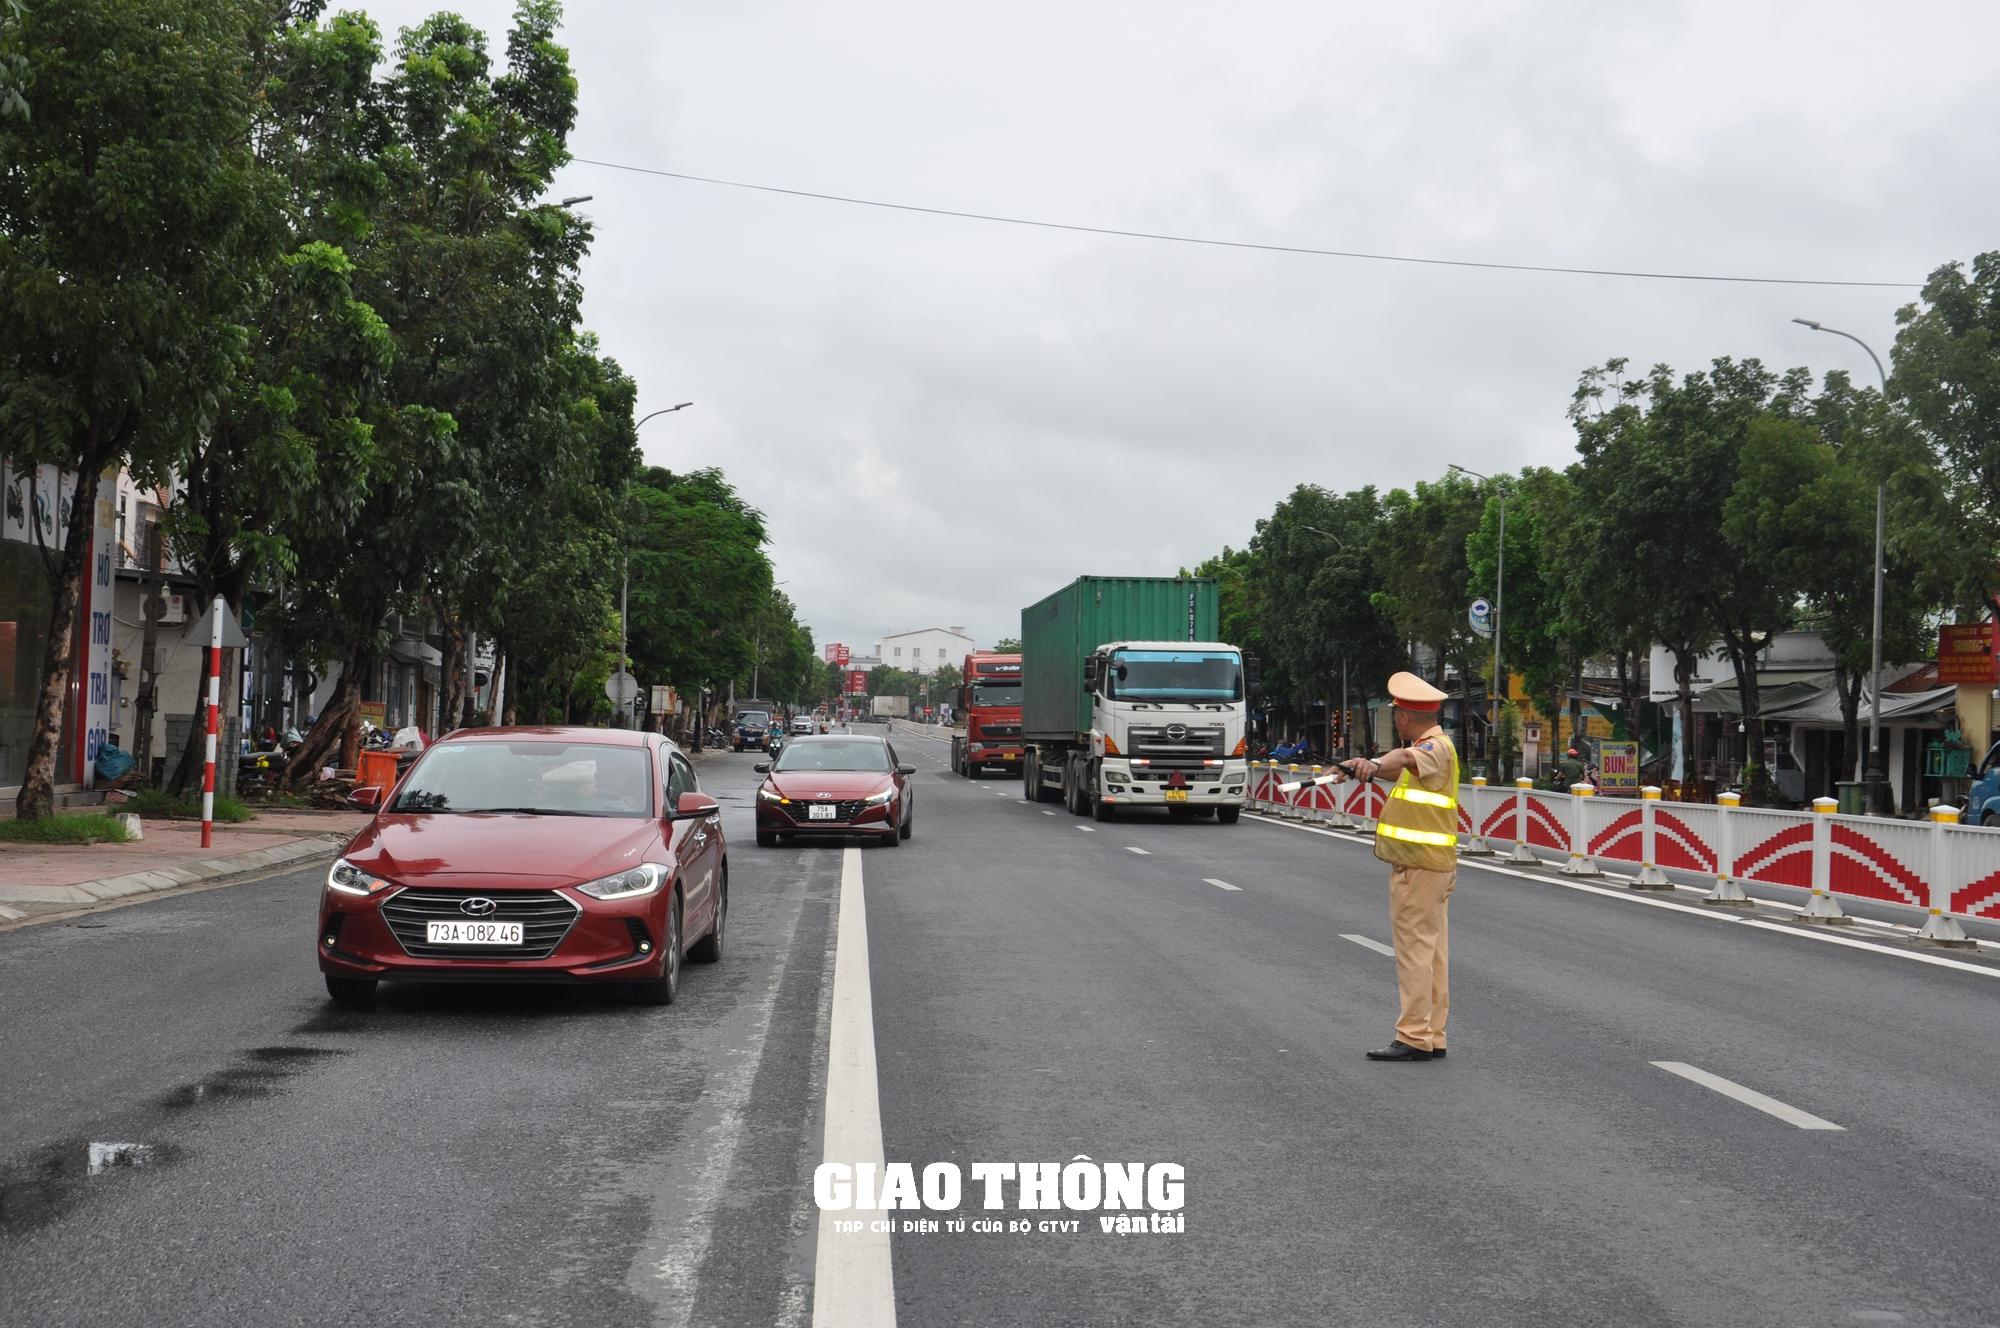 Dàn trận xử lý nồng độ cồn trên QL1 ở tỉnh Thừa Thiên-Huế: Loạt người vi phạm sau bữa ăn trưa - Ảnh 7.